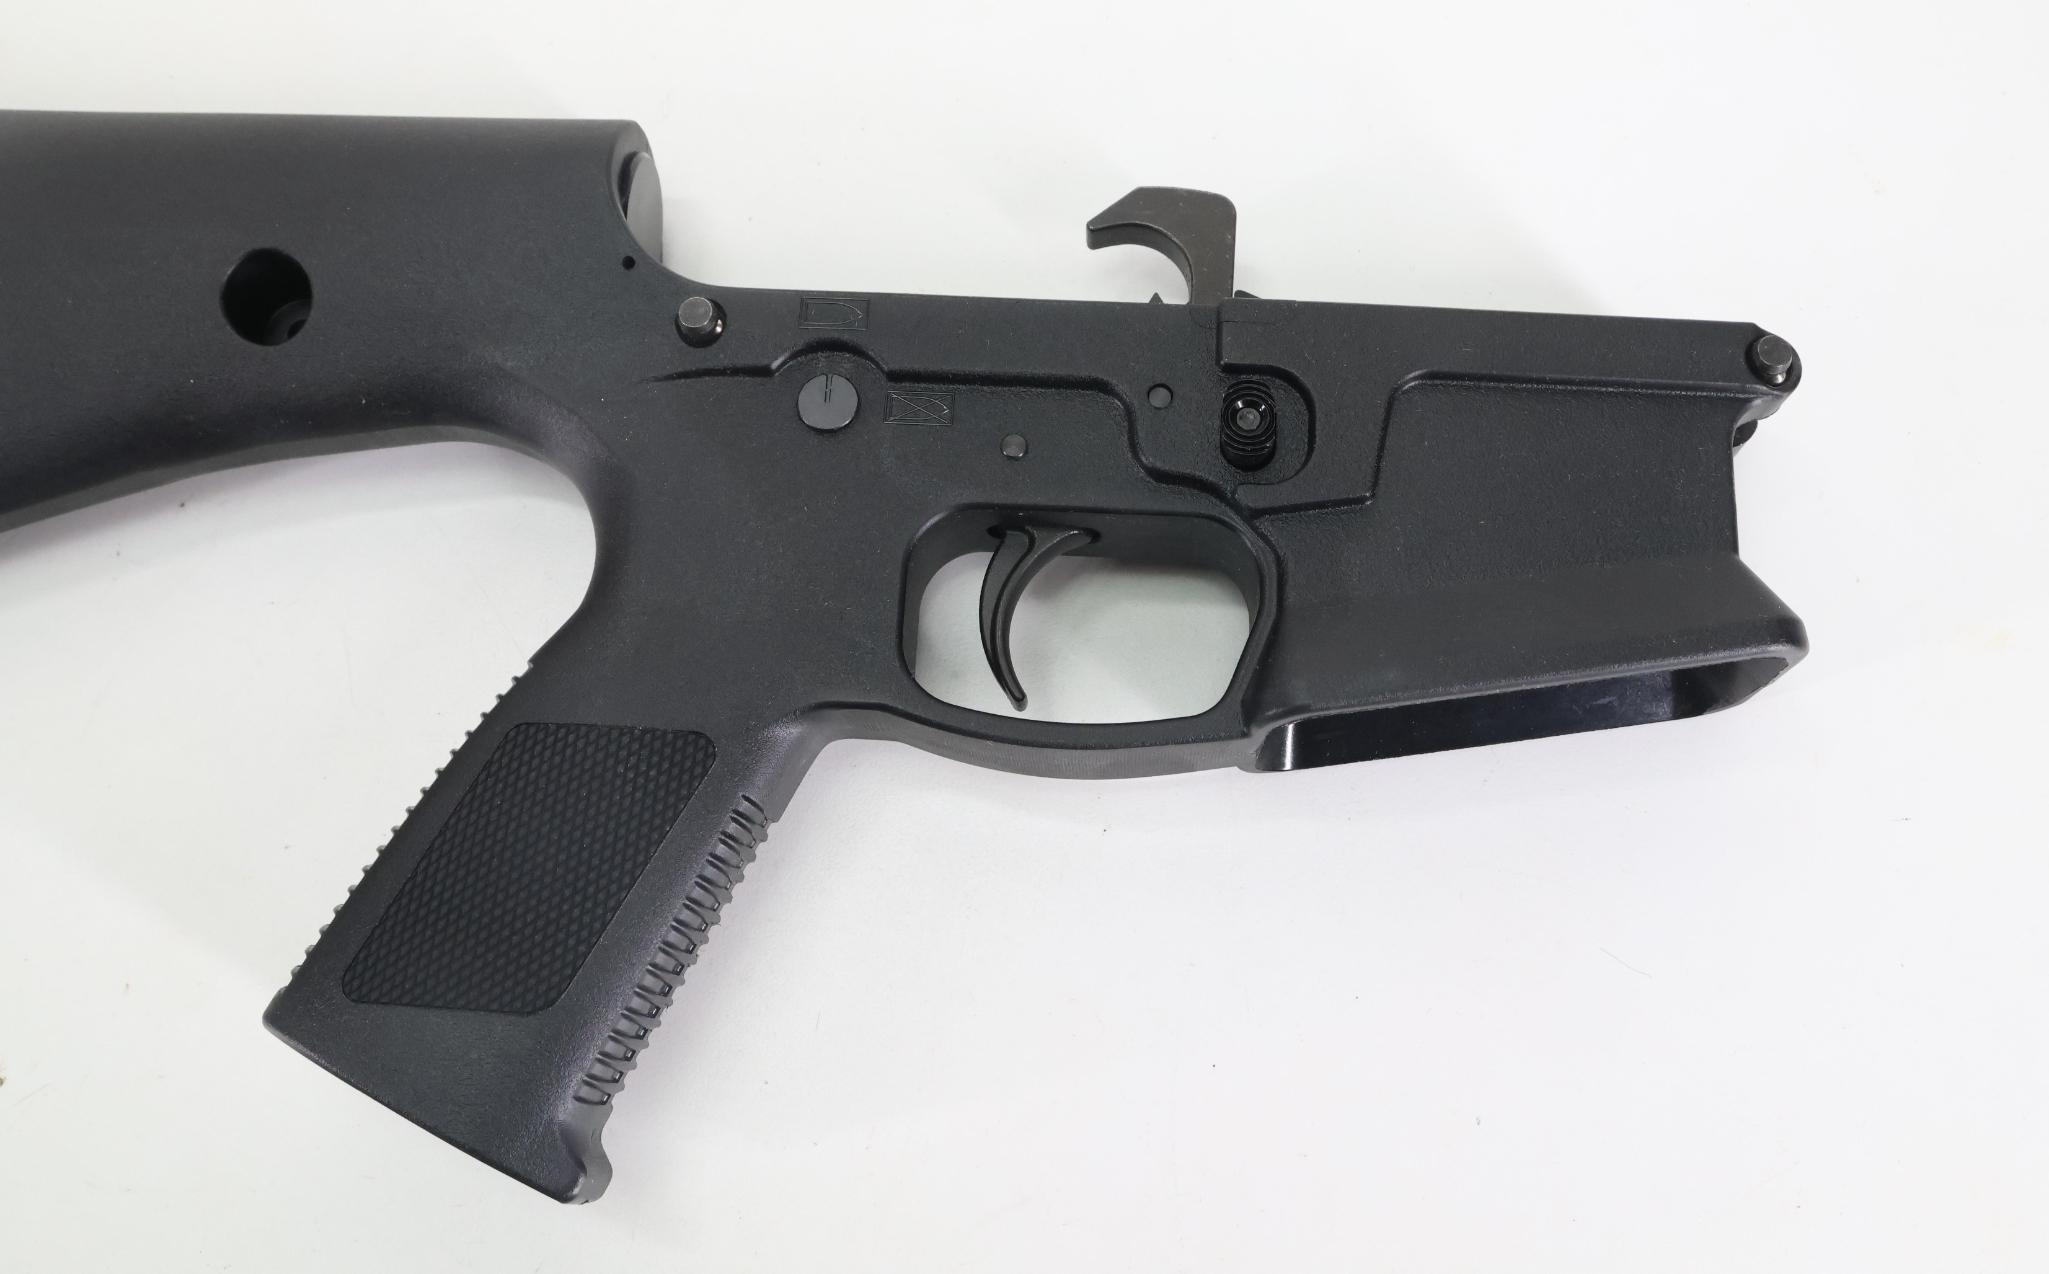 KE Arms KP-15 Complete AR Lower